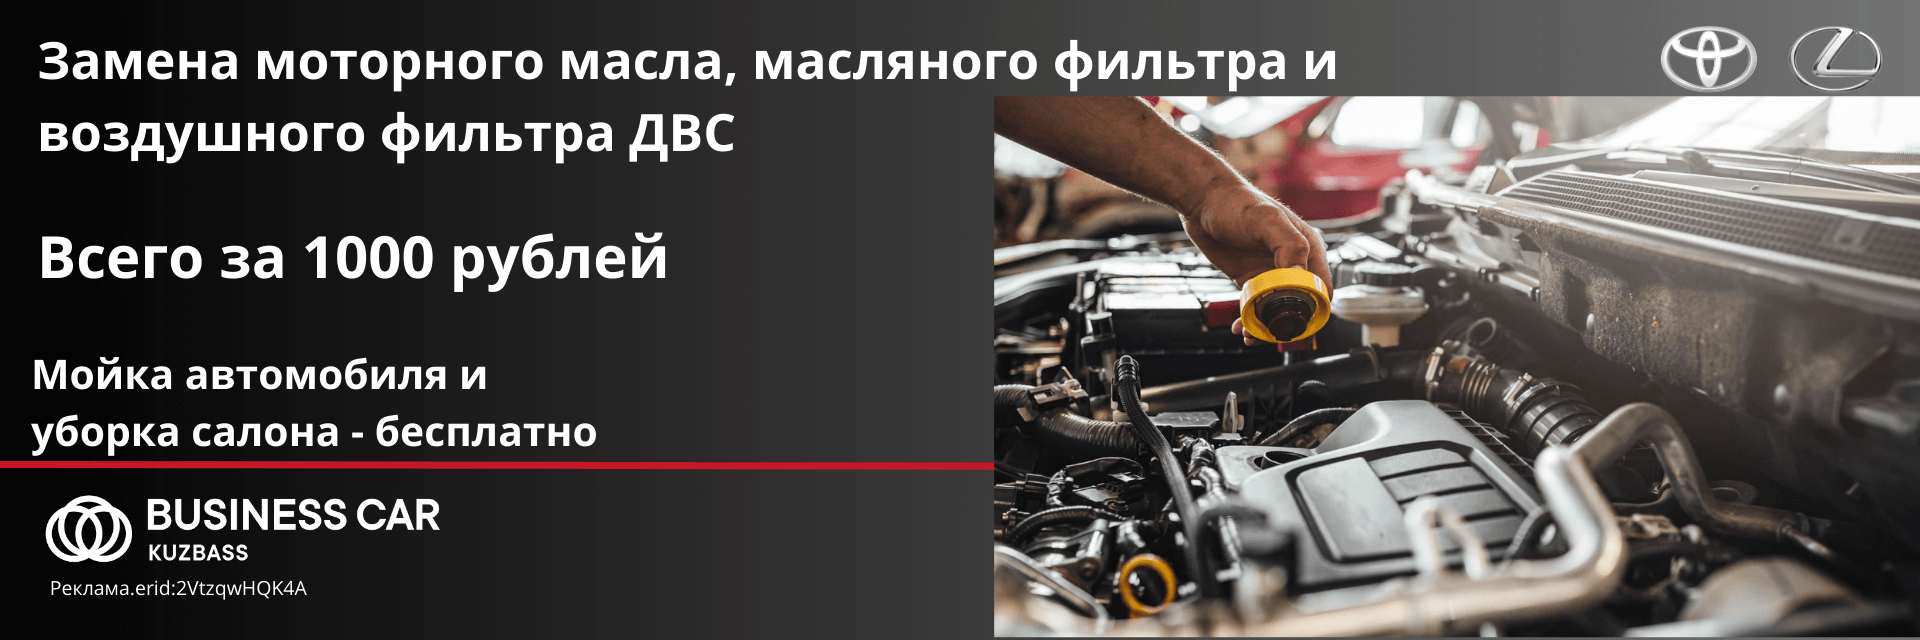 Замена моторного масла, масляного фильтра и фильтра ДВС за 1000 рублей